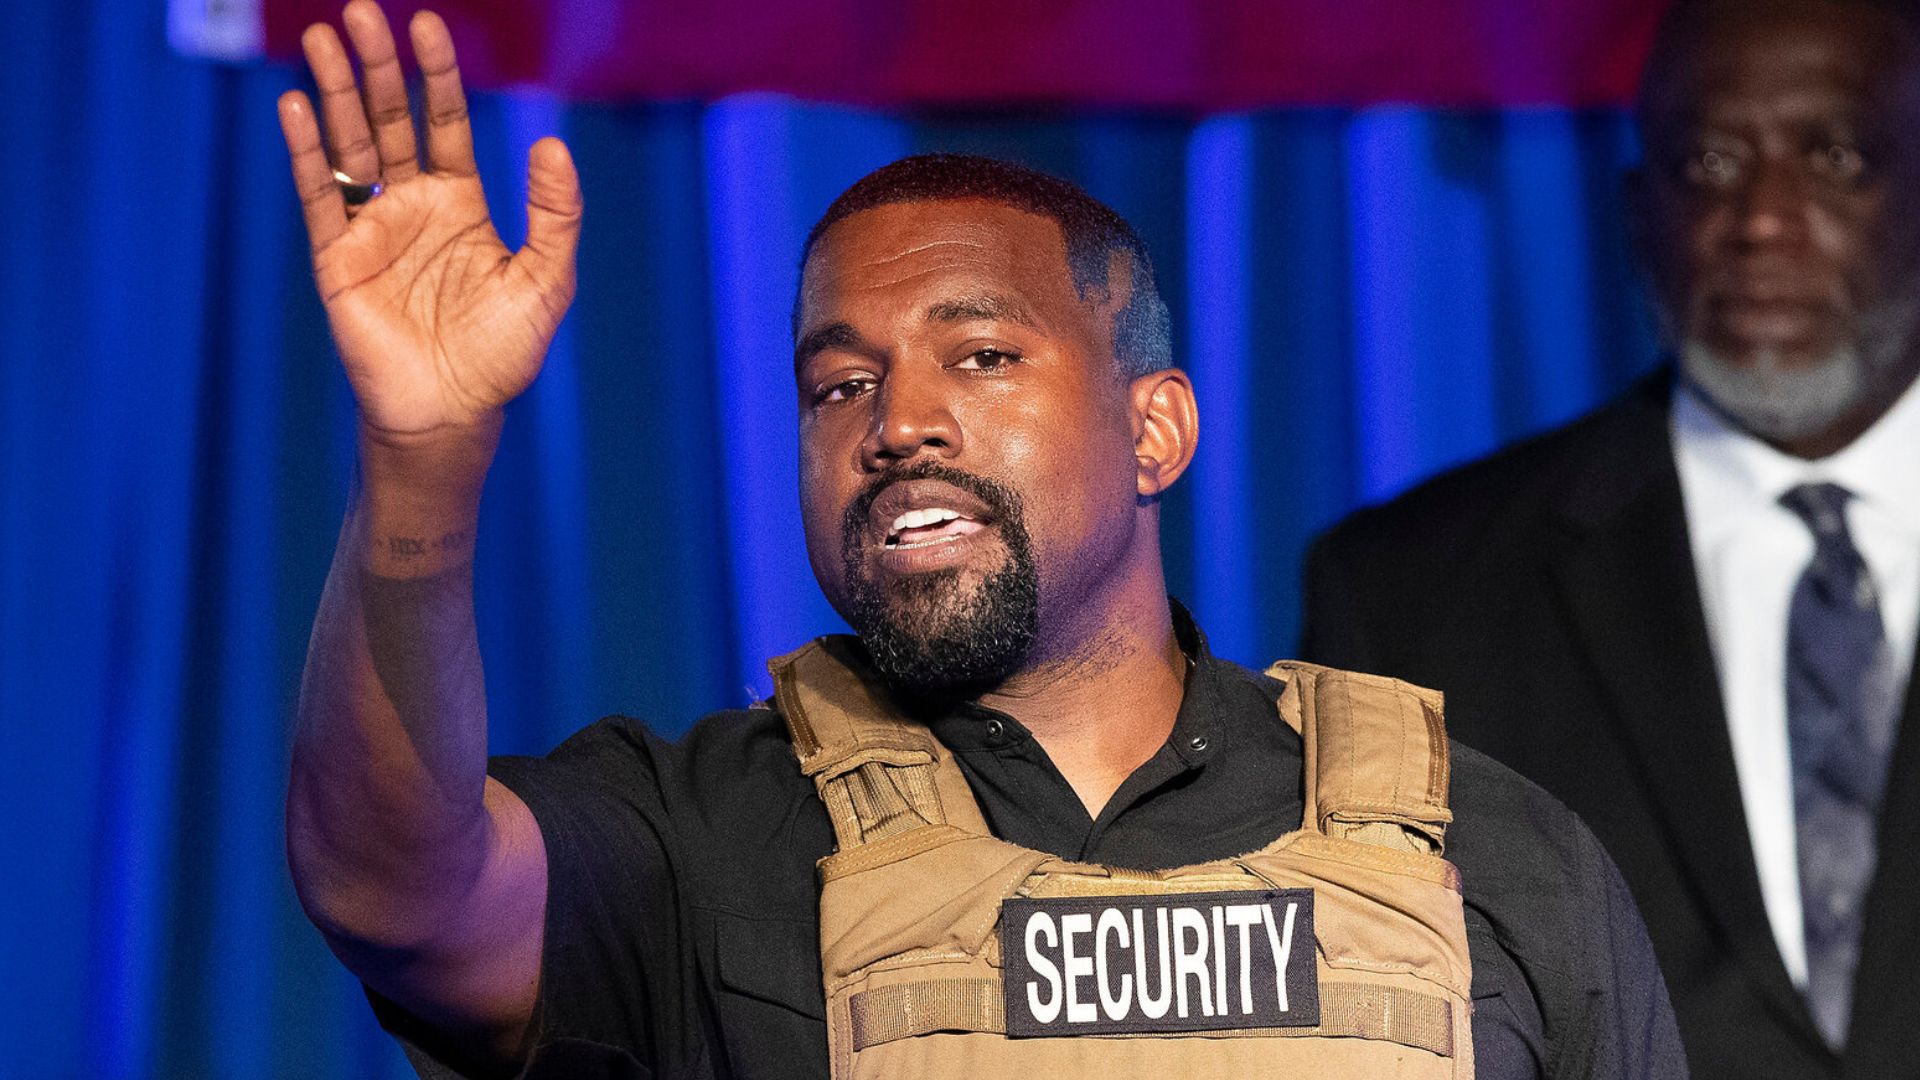 Kanye West diz que deseja concorrer mais uma vez à presidência dos EUA: "No tempo de Deus" - Mundo Negro